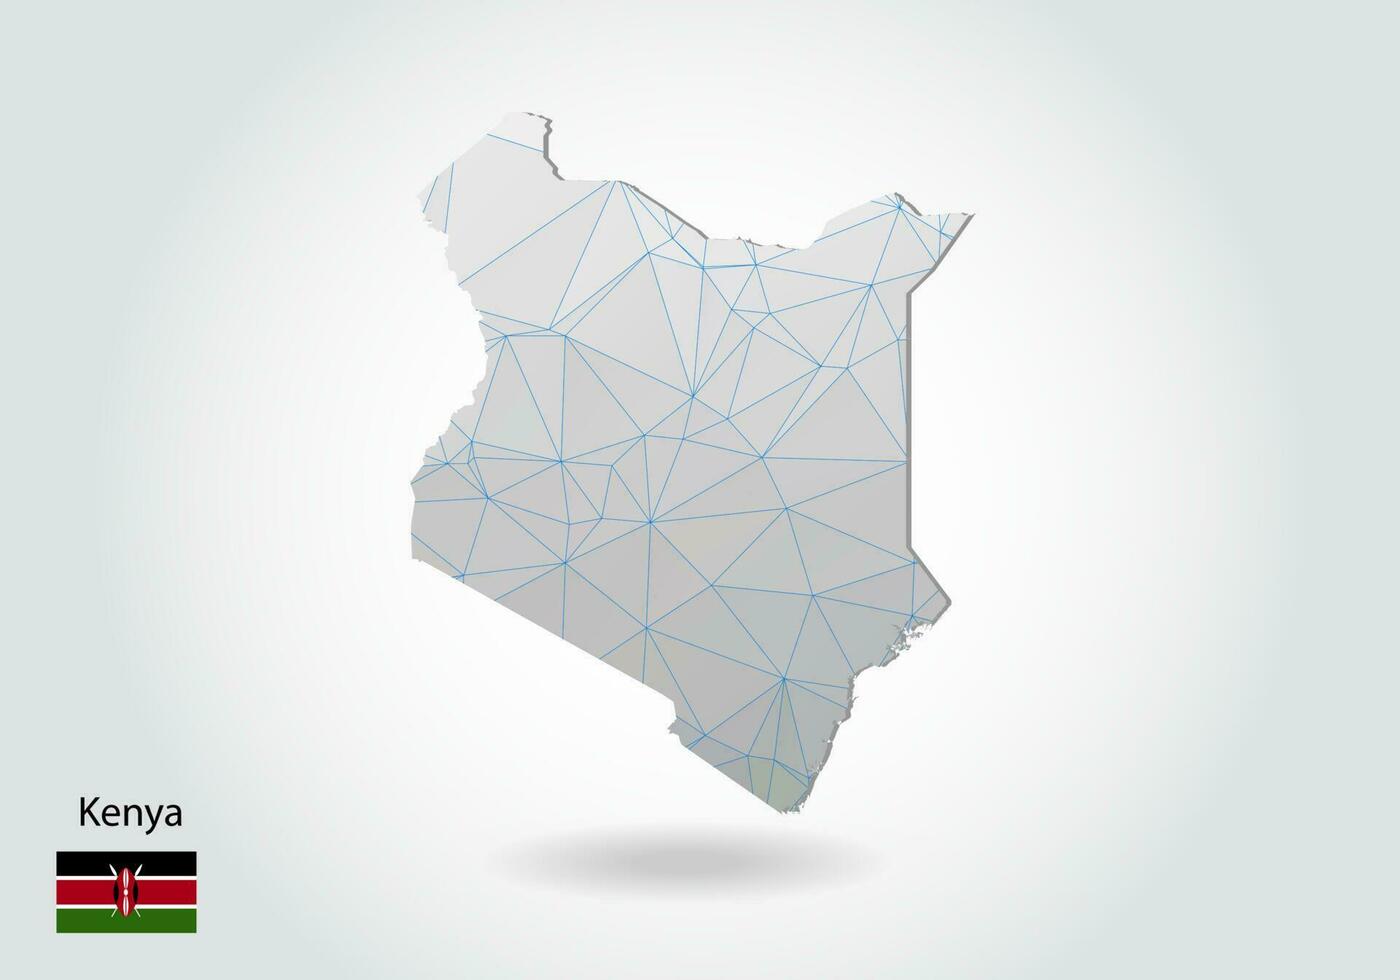 mappa vettoriale del kenya con design a triangoli alla moda in stile poligonale su sfondo scuro, forma della mappa in moderno stile artistico 3d con taglio di carta. disegno di ritaglio di carta a strati.